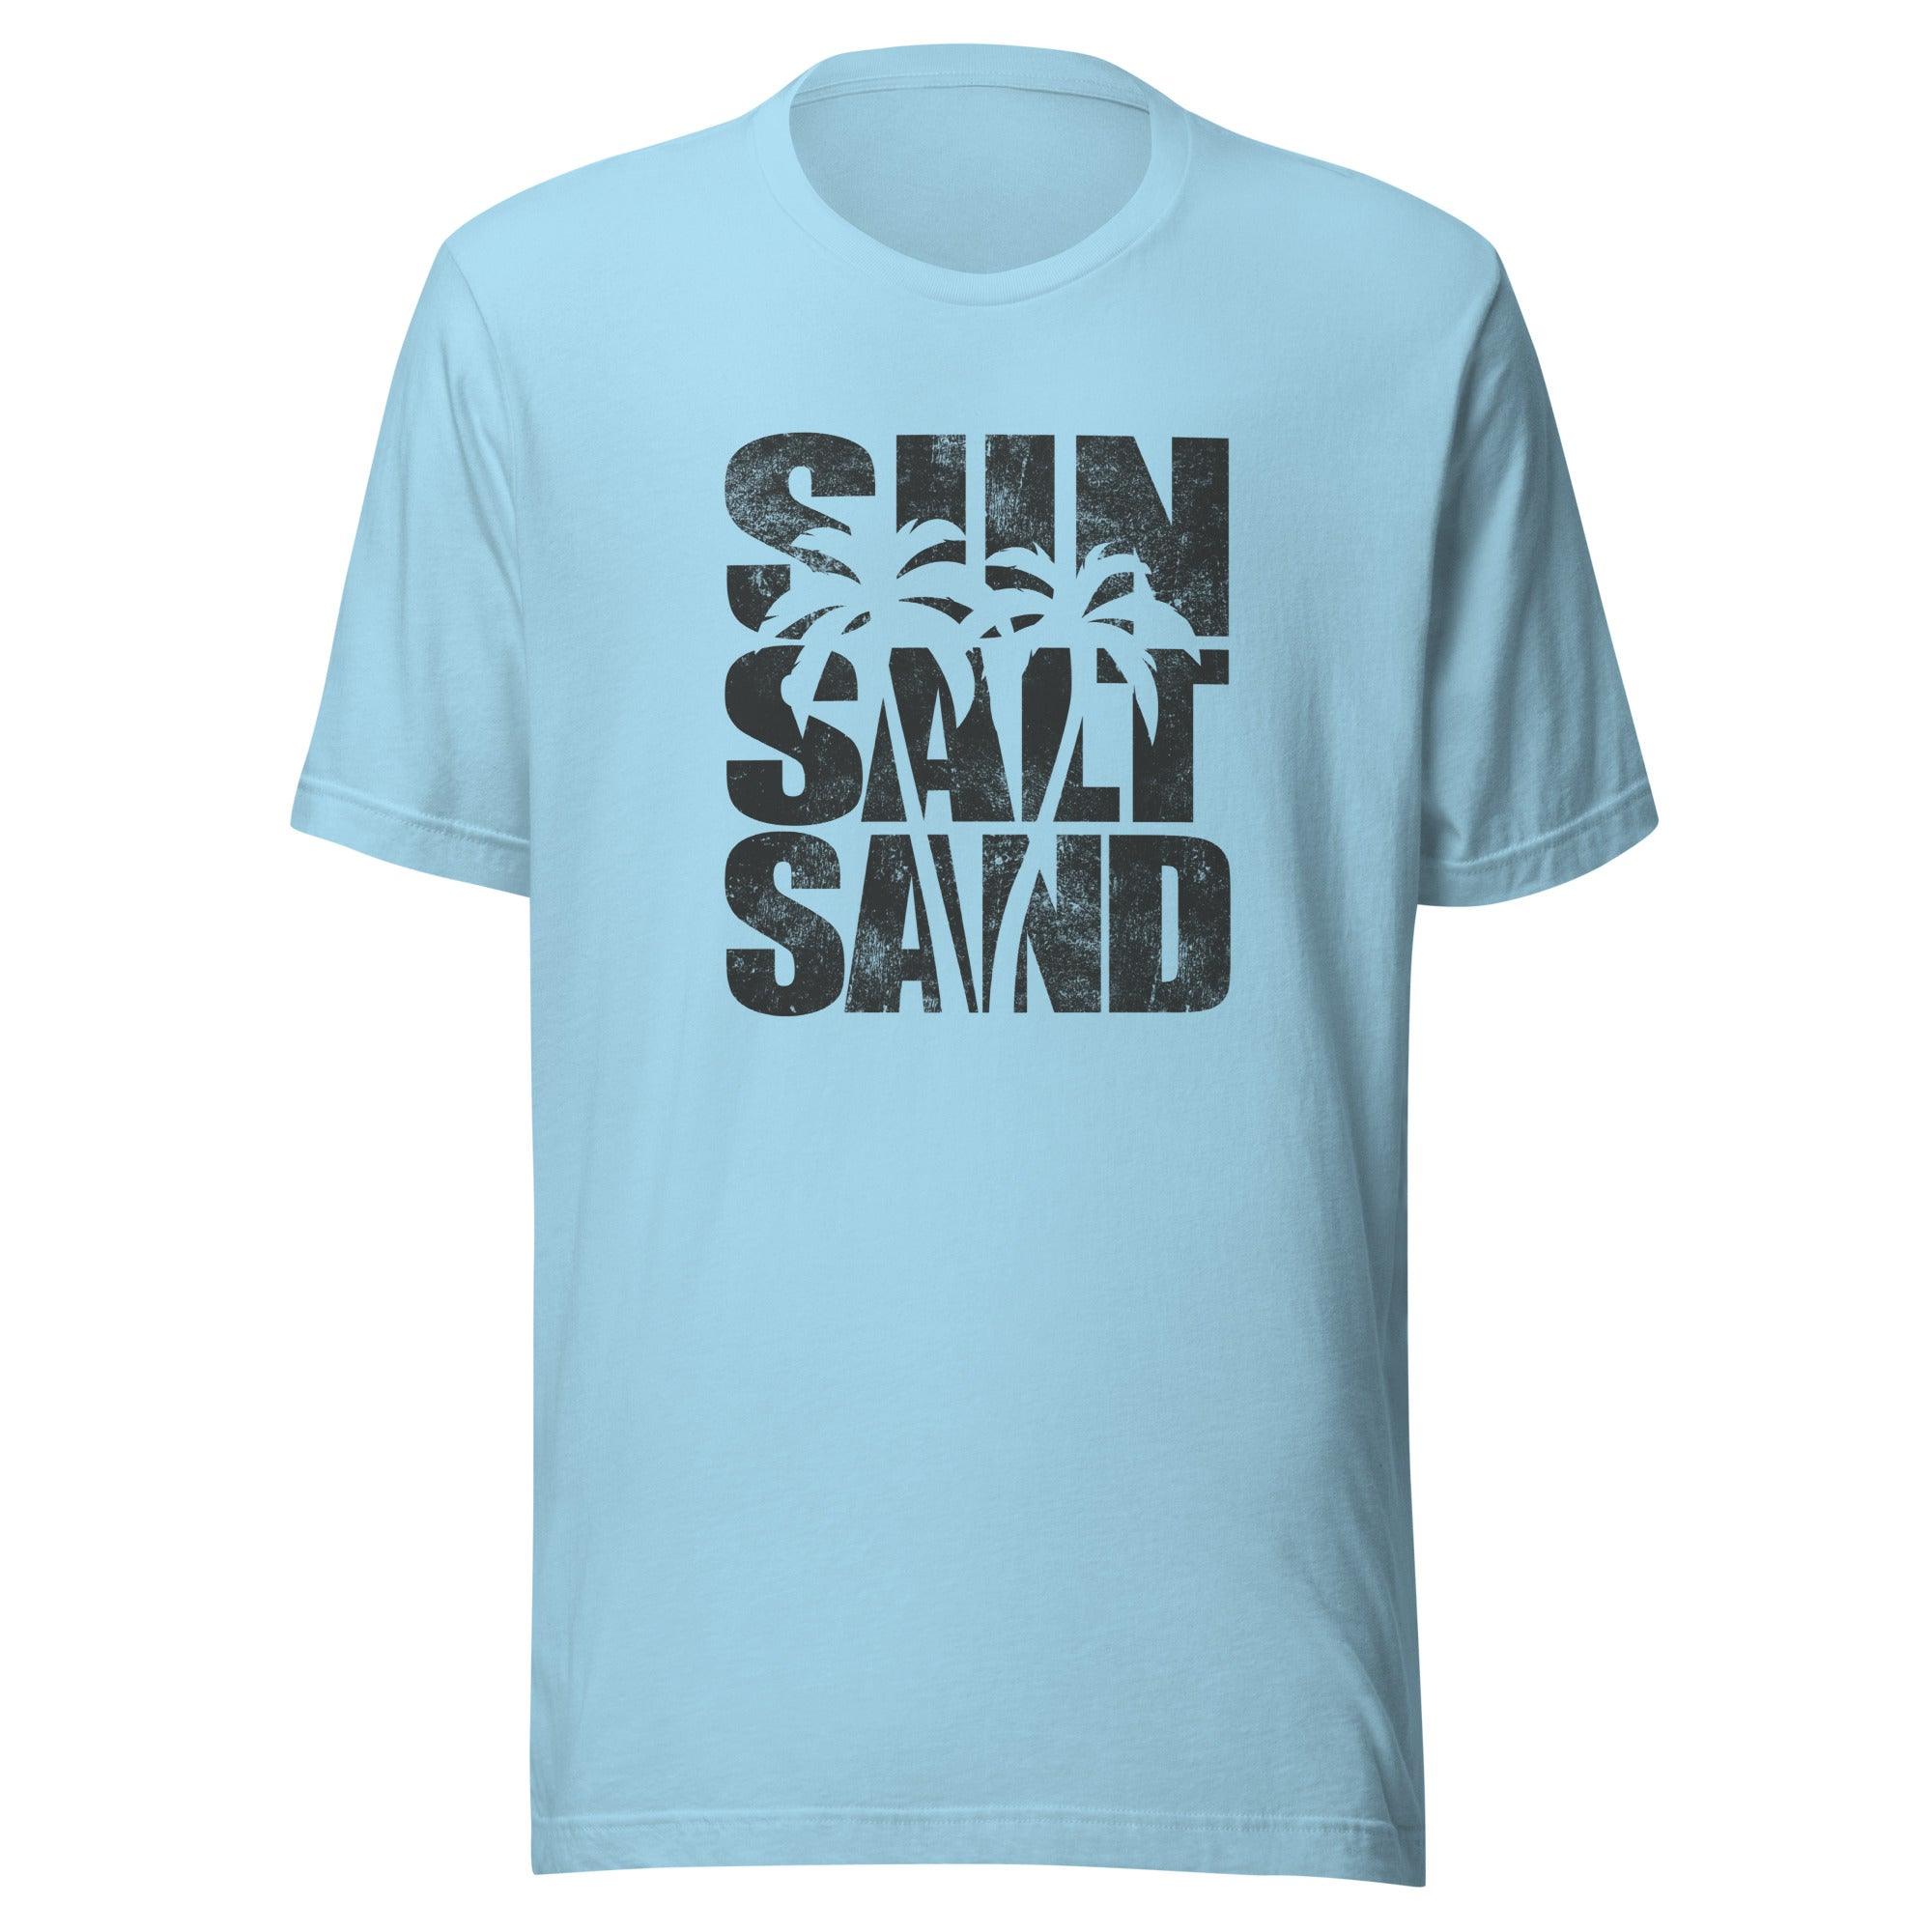 Summer T-shirt Distressed Sun Summer and Sand Short Sleeve Top - TopKoalaTee